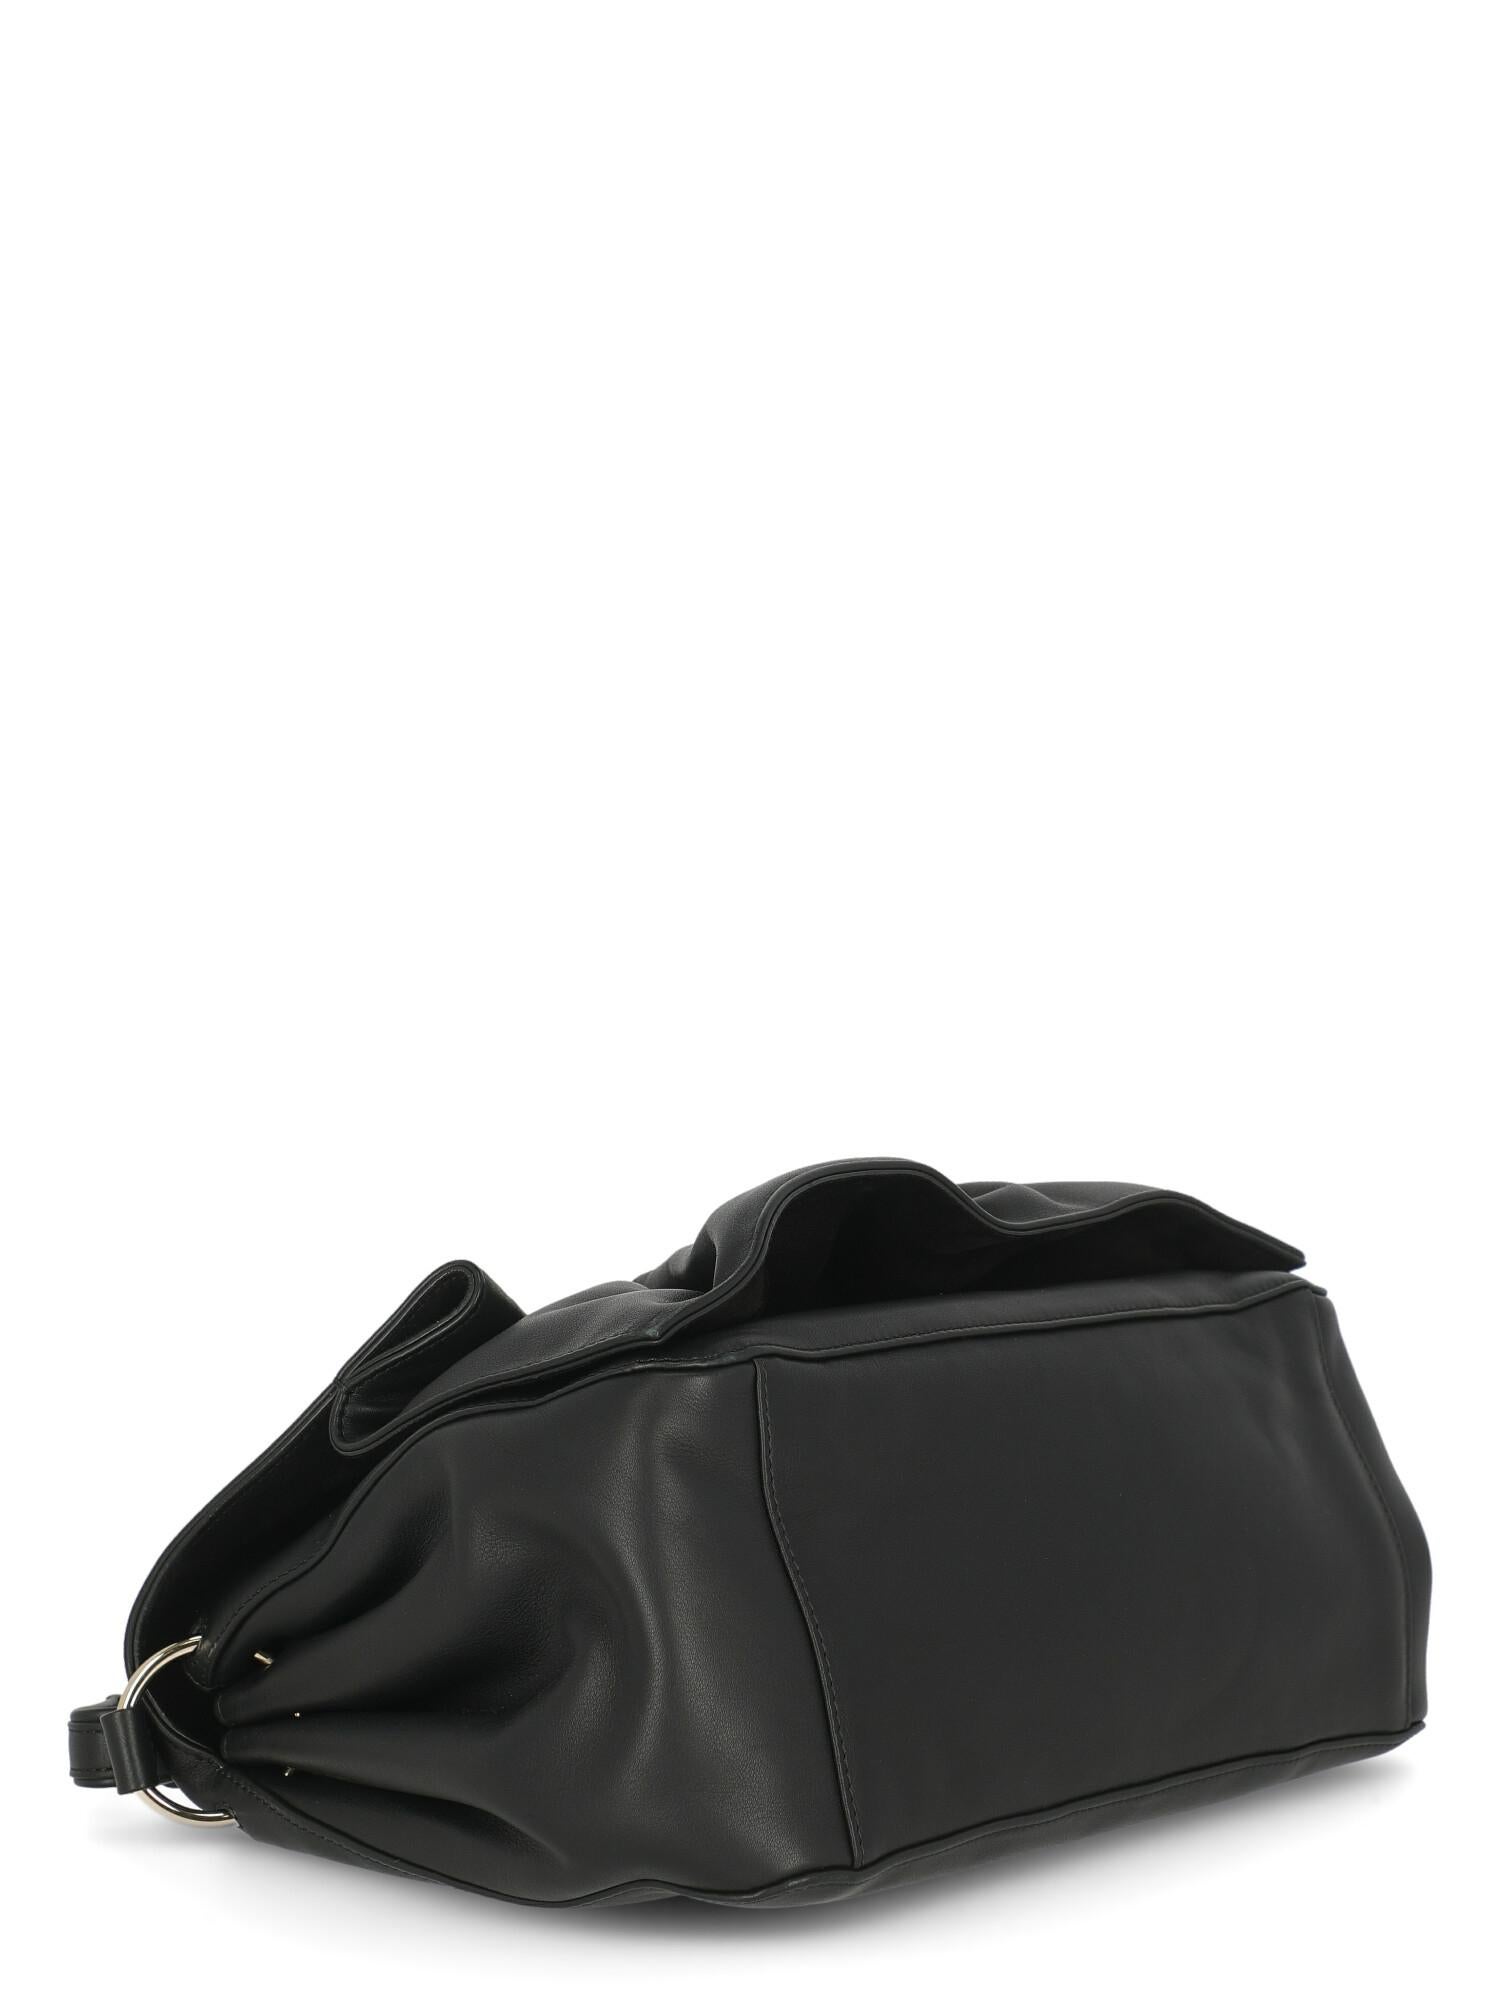 Valentino Woman Shoulder bag  Black Leather For Sale 1